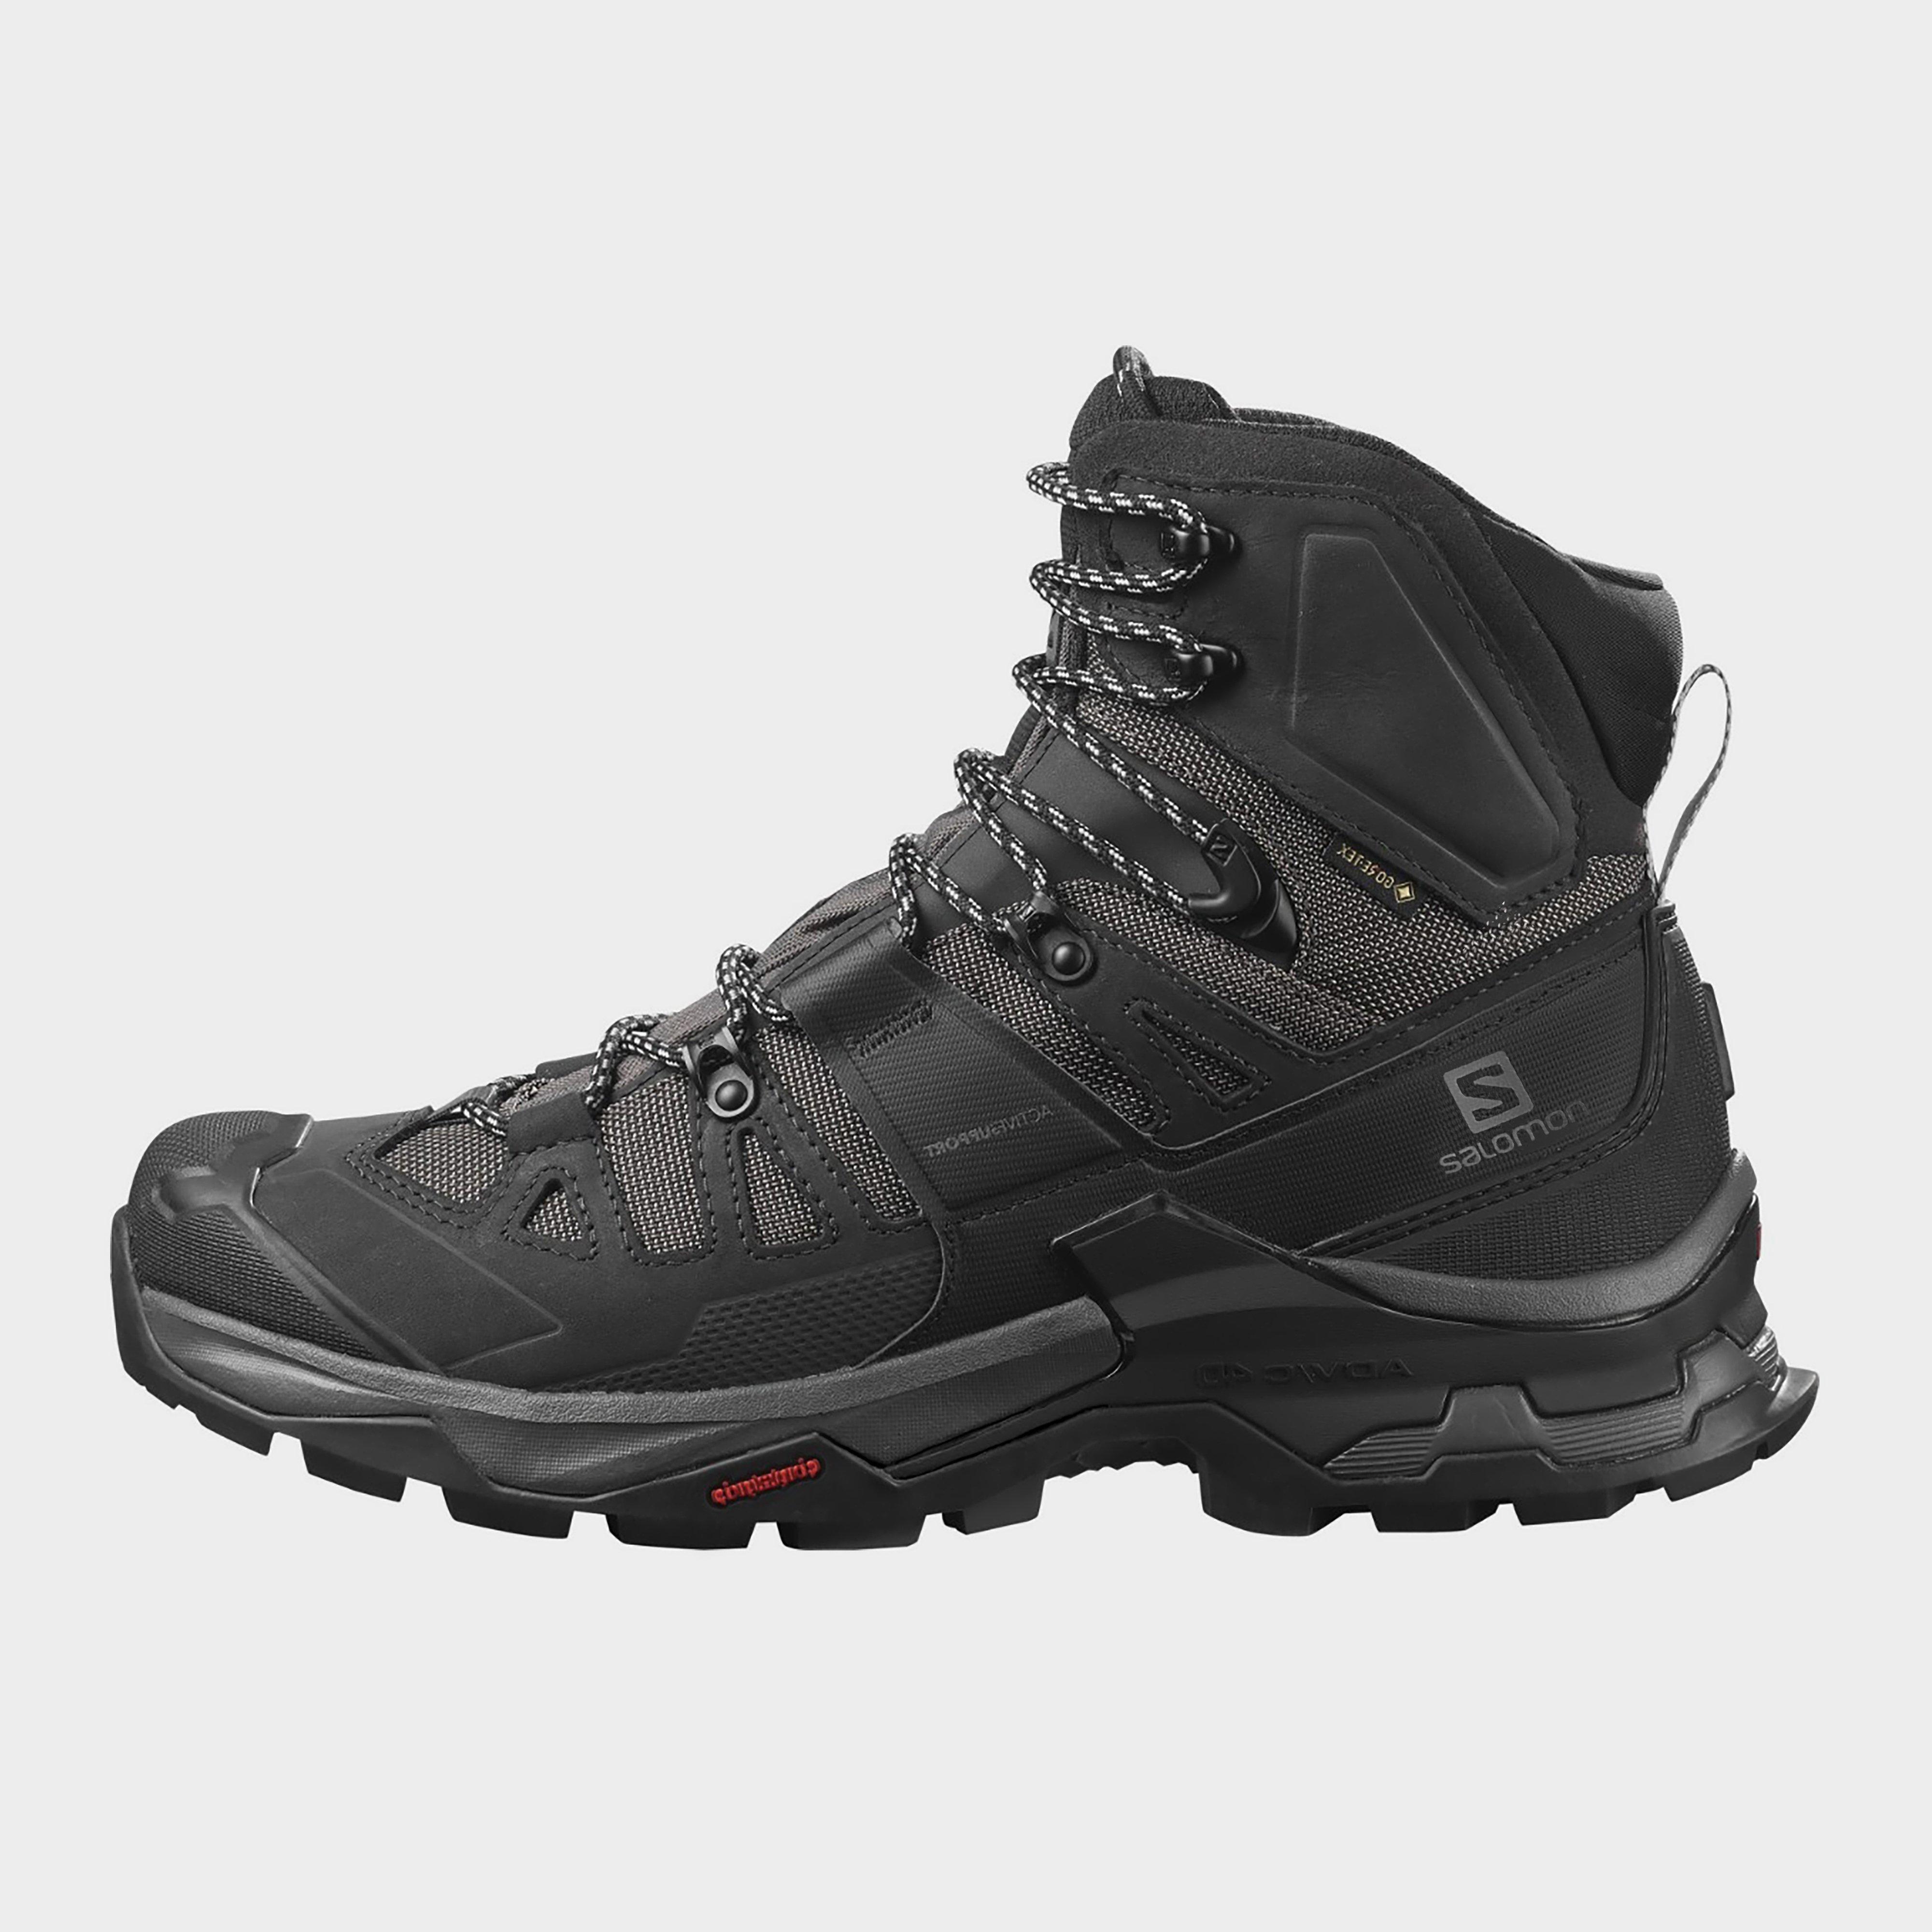 Photos - Trekking Shoes Salomon Men's Quest 4D 4 GORE-TEX Hiking Boot, Black 